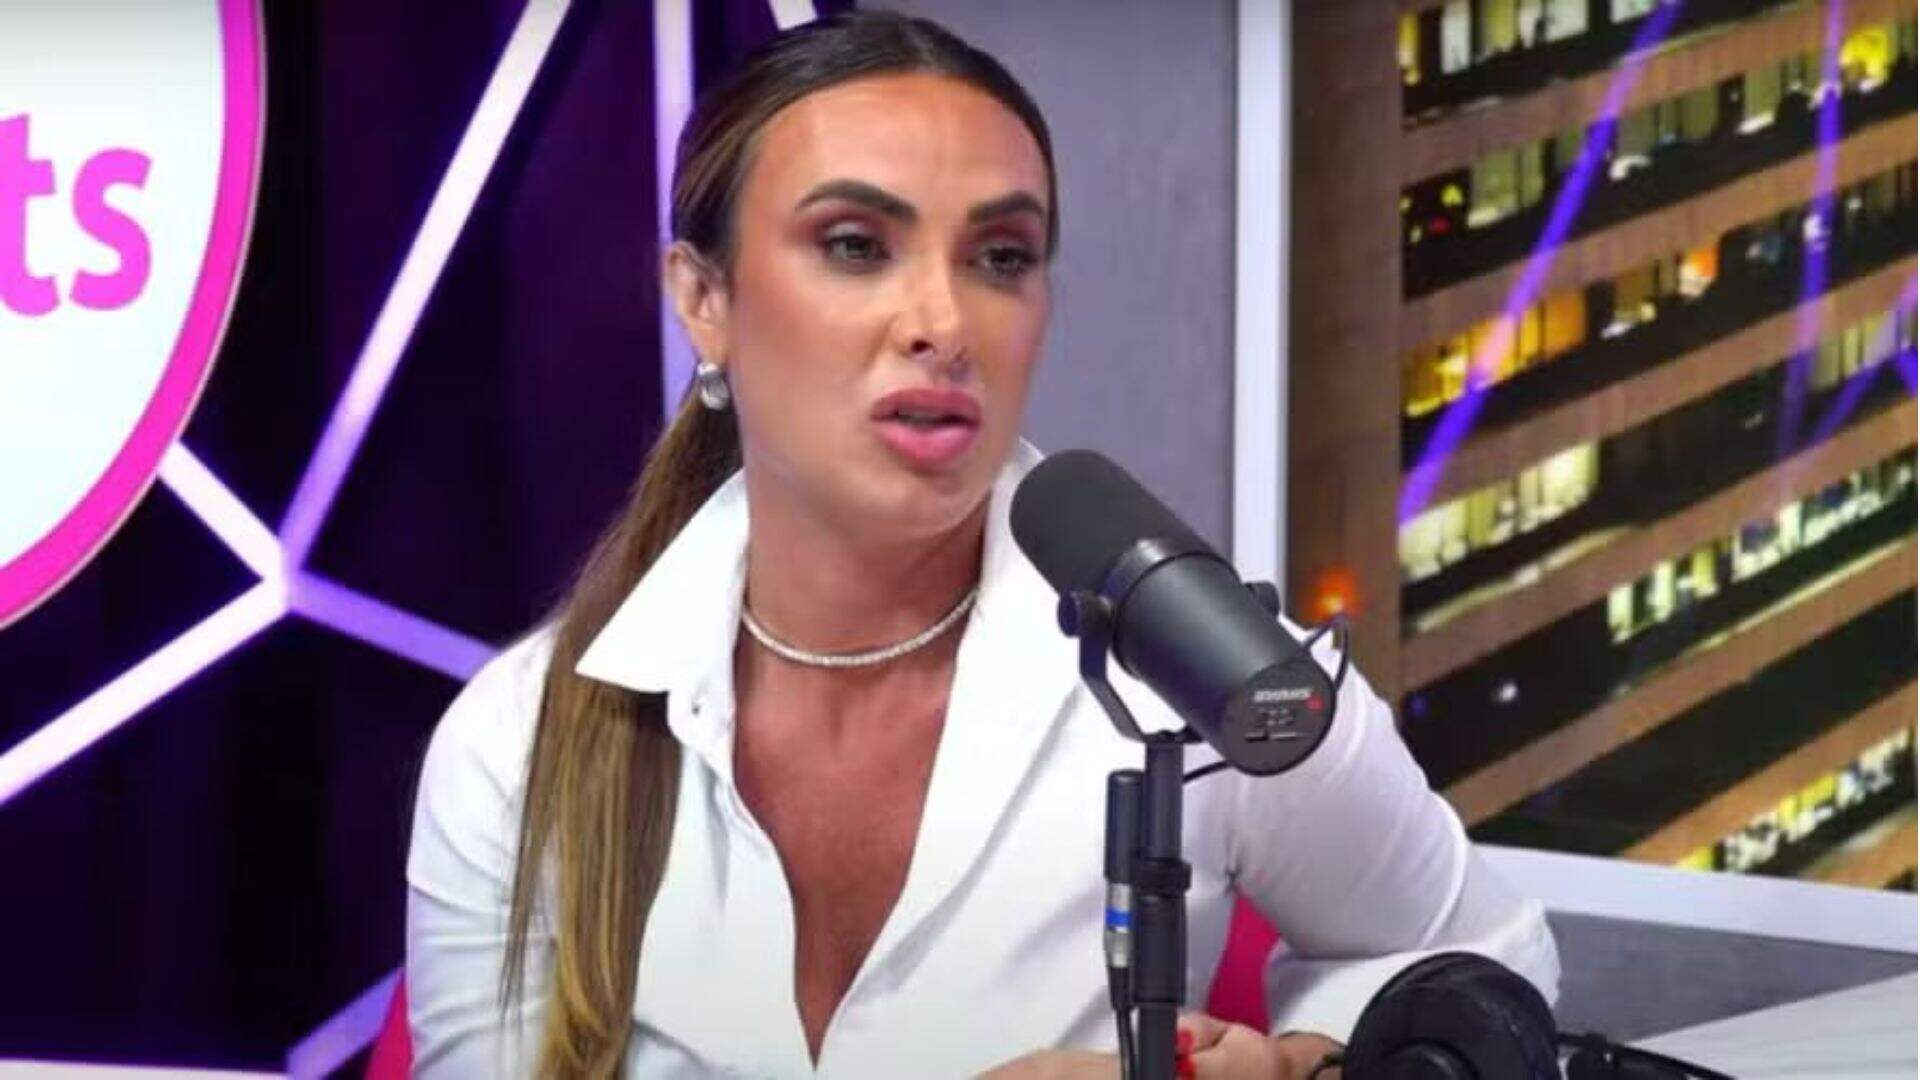 Nicole Bahls detona Val Marchiori após polêmica sobre bolsas de grife falsificadas: “Muito vazio” - Metropolitana FM